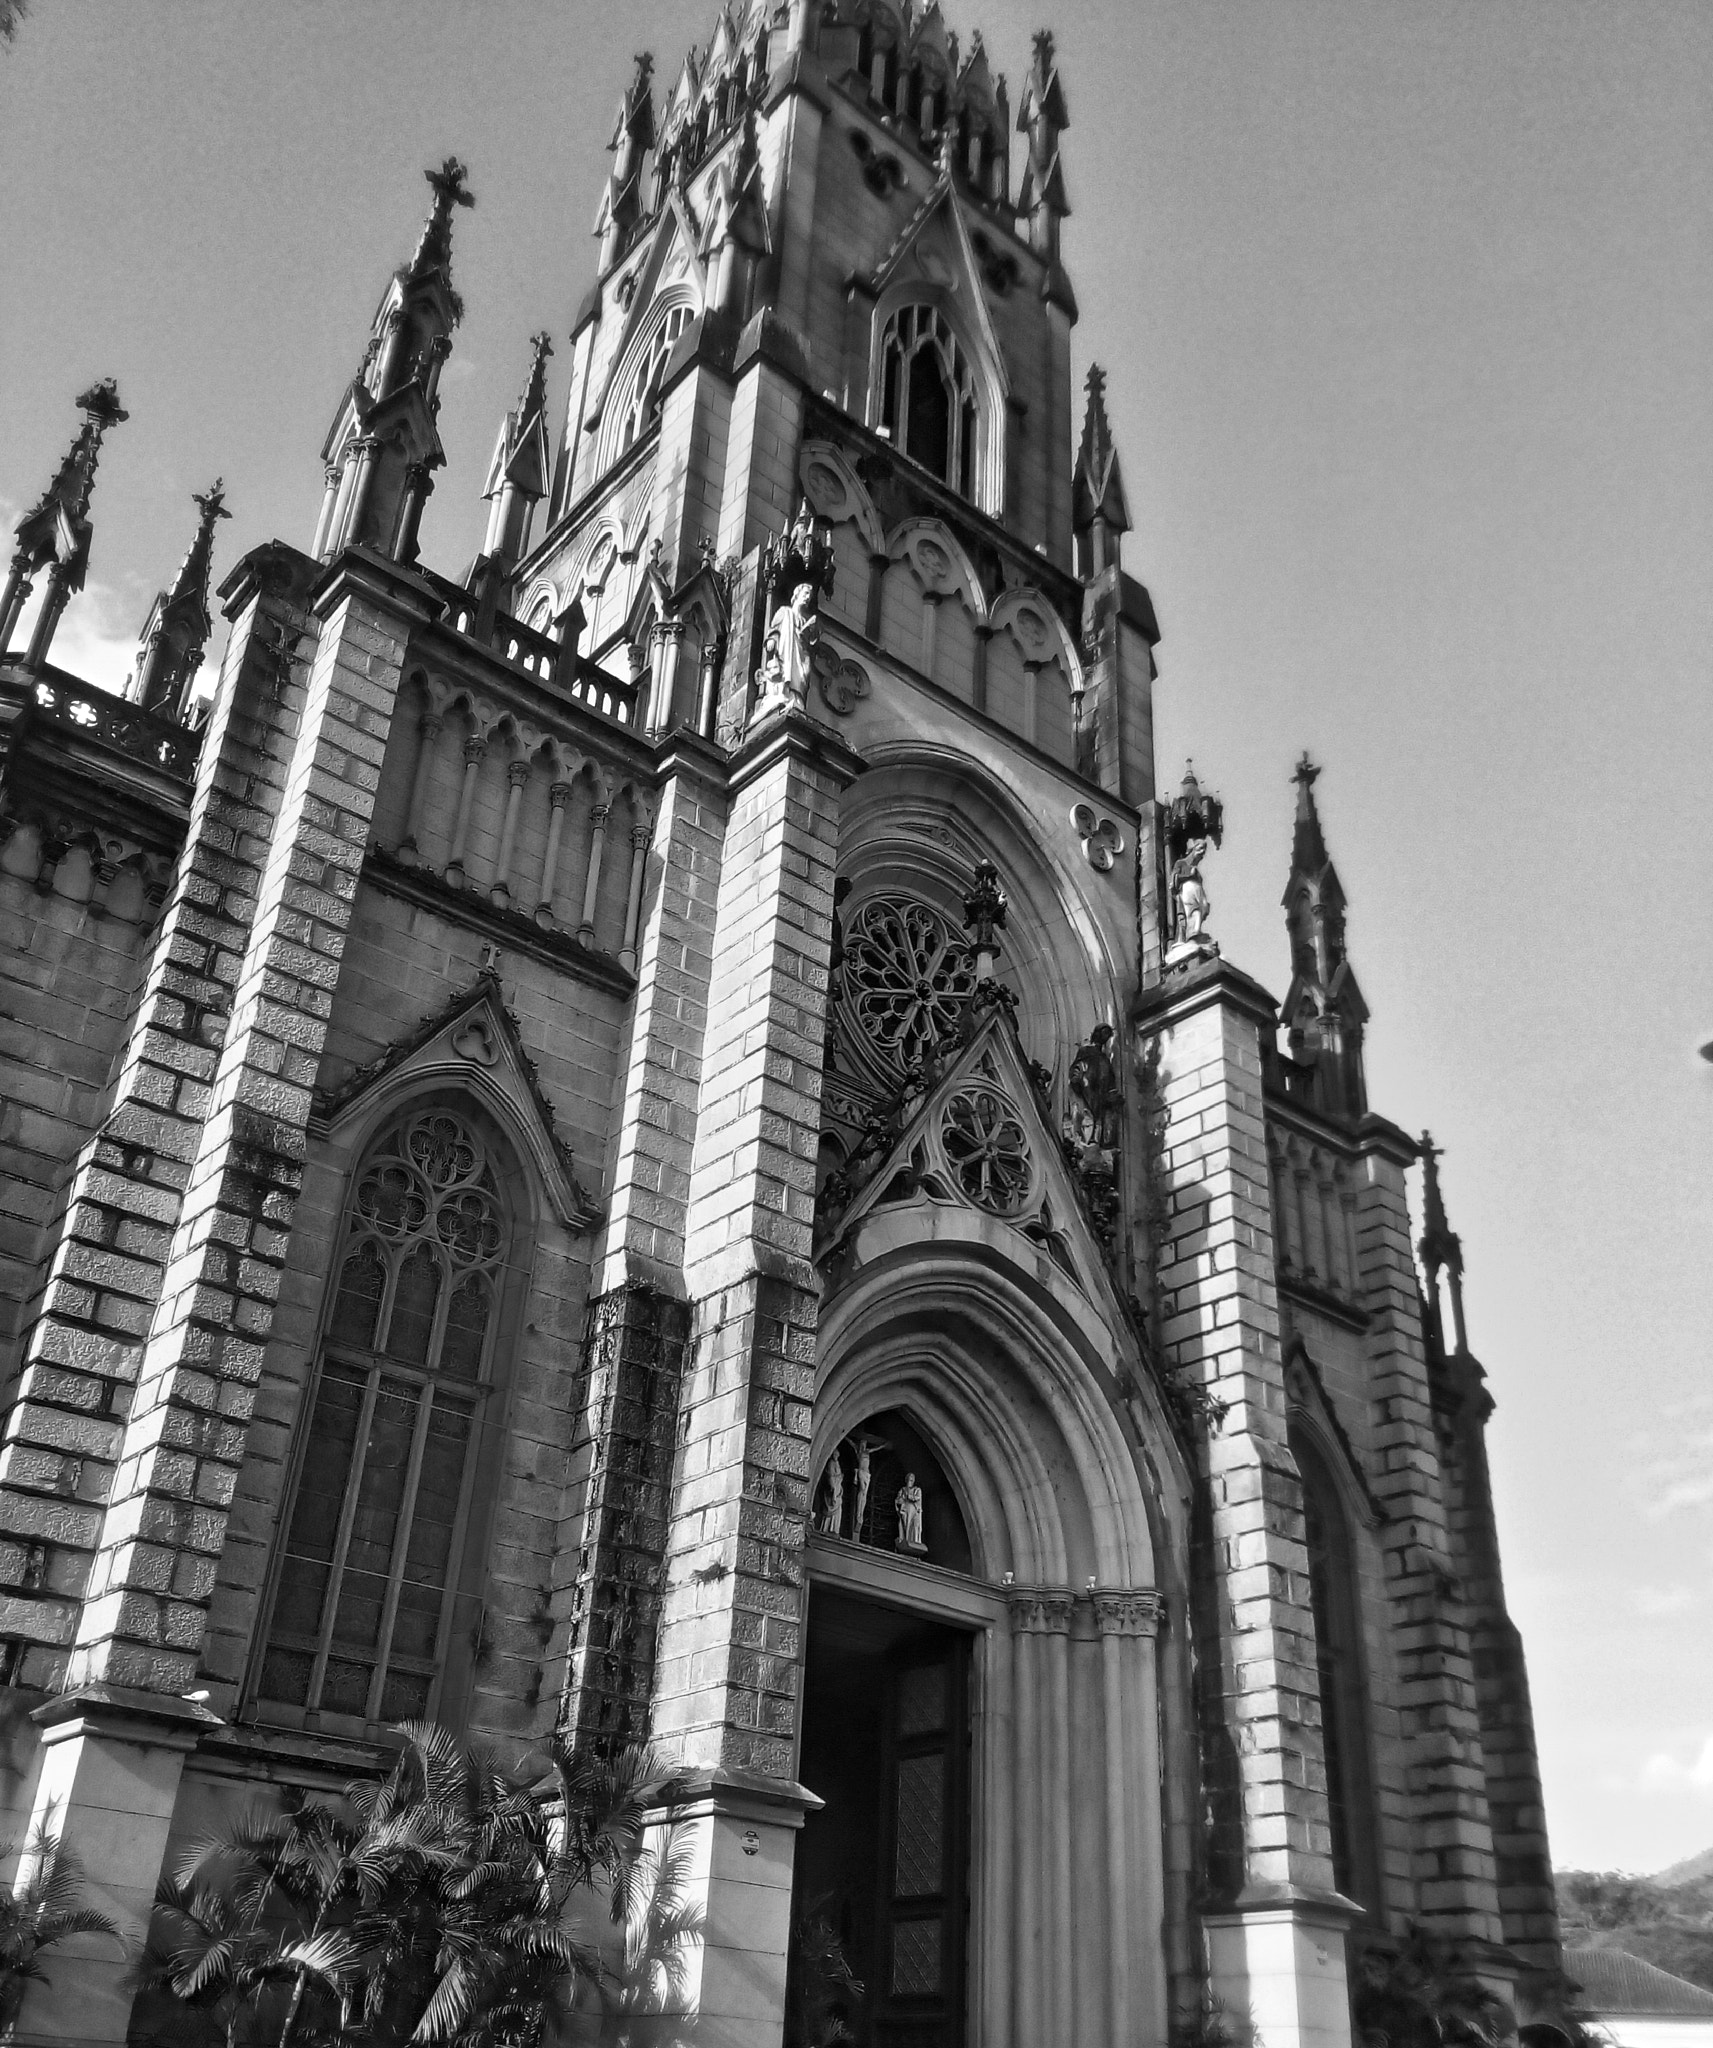 ASUS Zenfone Go (ASUS_Z00VD) sample photo. Catedral de são pedro de alcântara photography